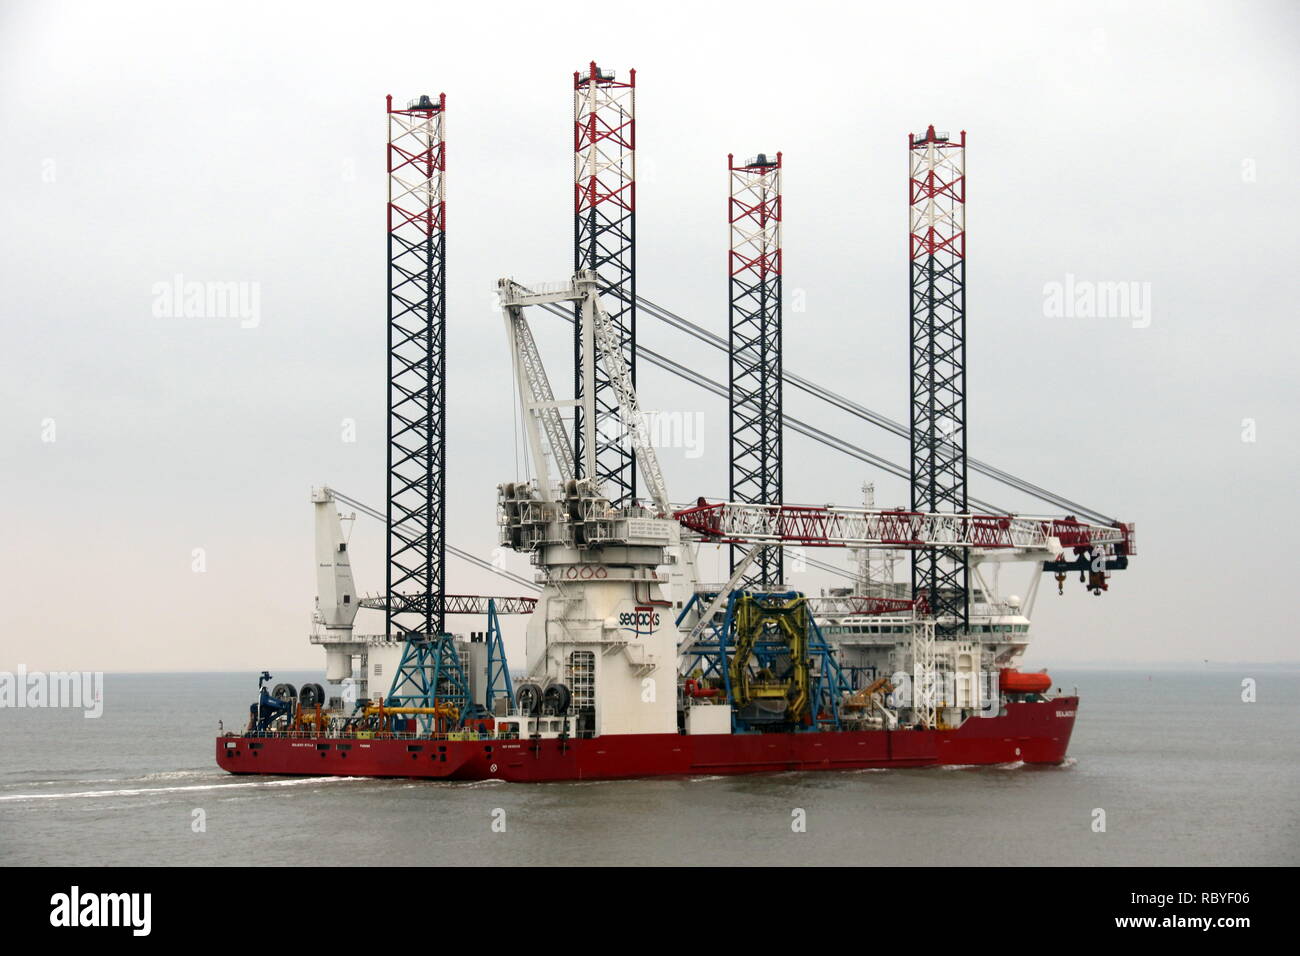 La turbina eolica Costruzione nave Seajacks Scilla raggiungerà il porto di Cuxhaven il 29 dicembre 2018 Foto Stock